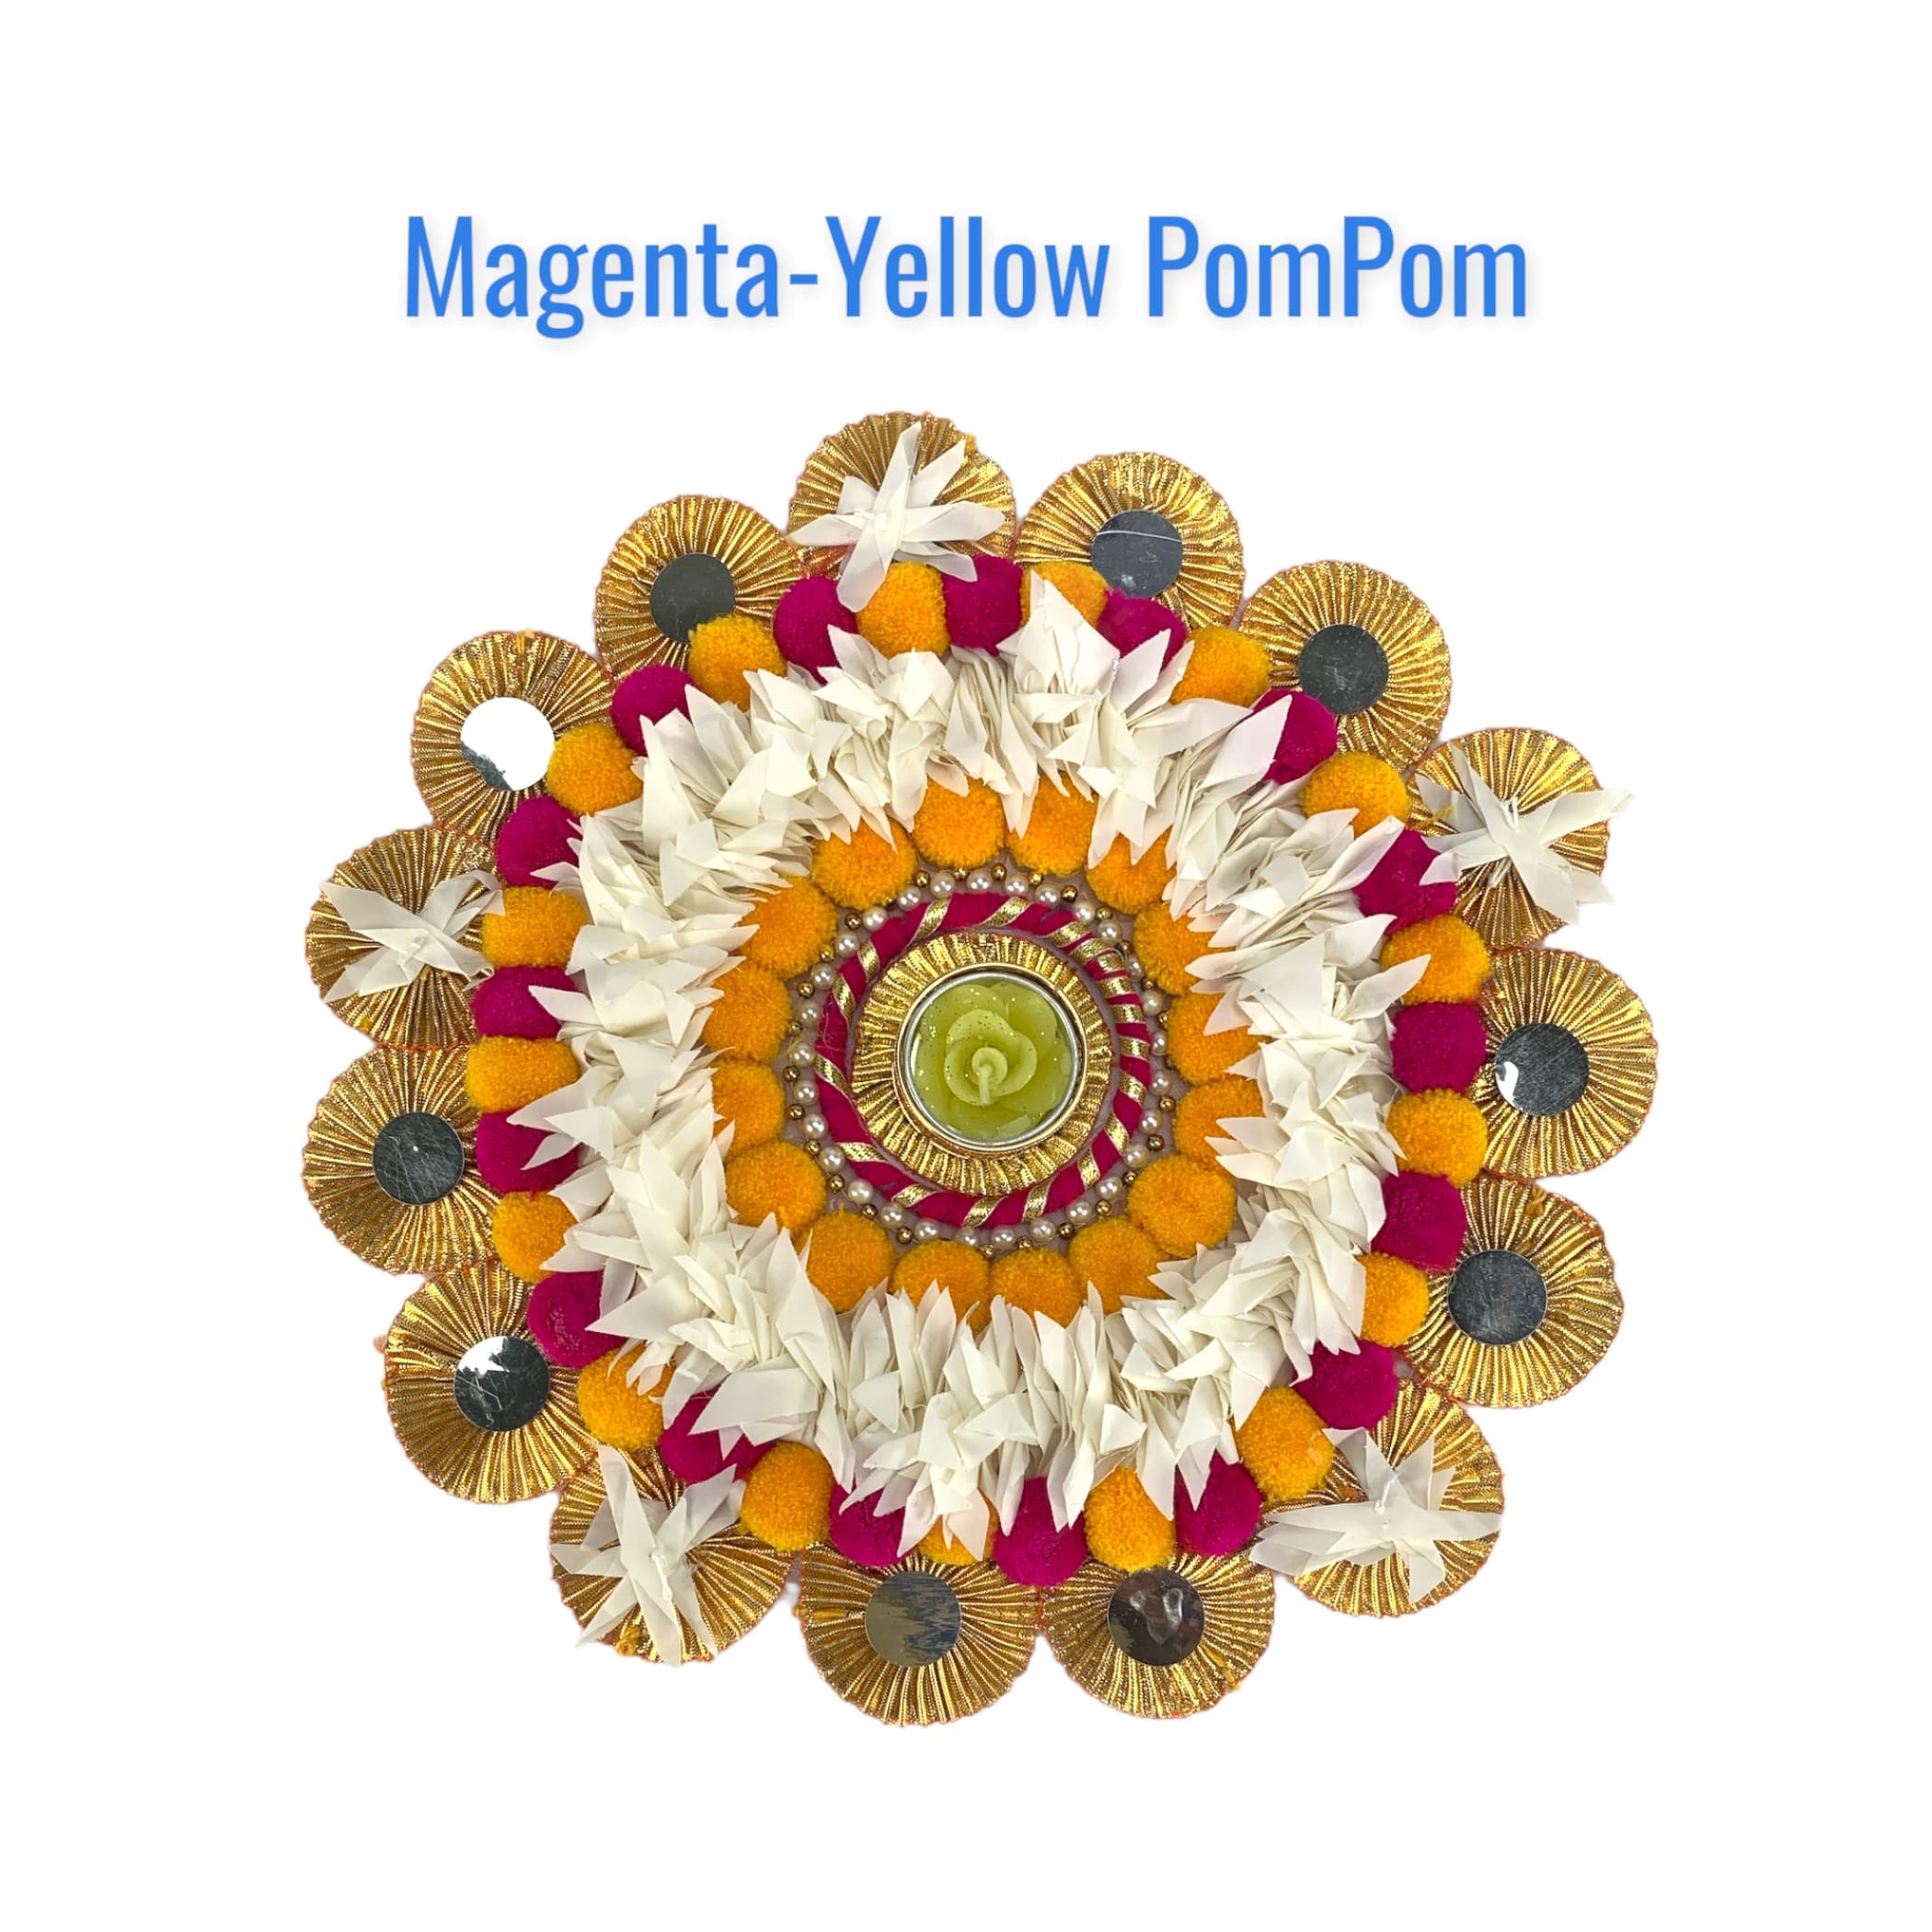 12 inch rangoli mat diya decor indian flower diwali